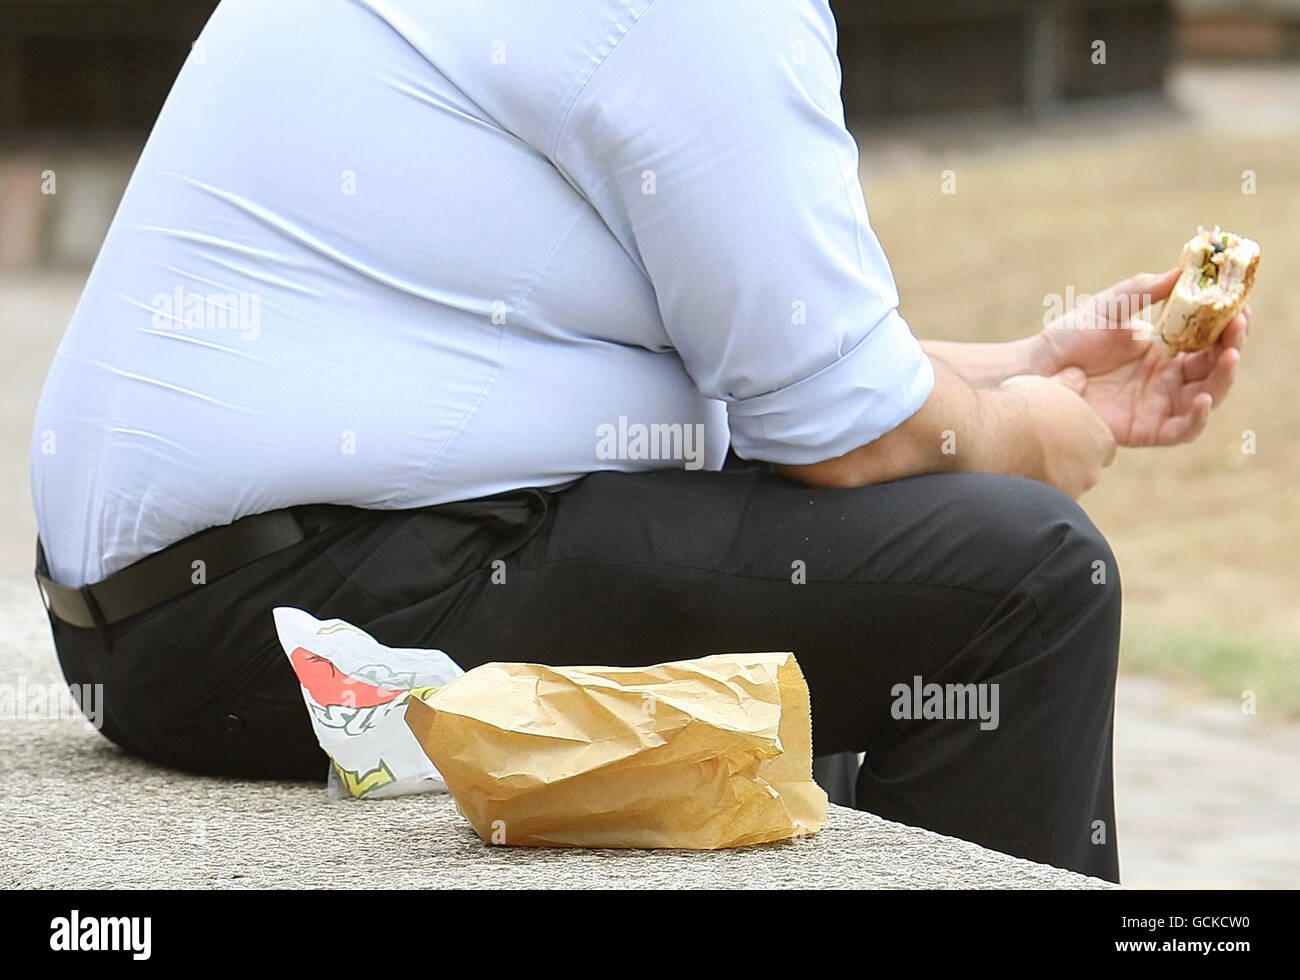 Un uomo in sovrappeso mangia cibo veloce. Il GPS e altri professionisti della salute dovrebbero dire alle persone che sono grassi piuttosto che obesi, ha detto oggi un ministro della salute. Foto Stock